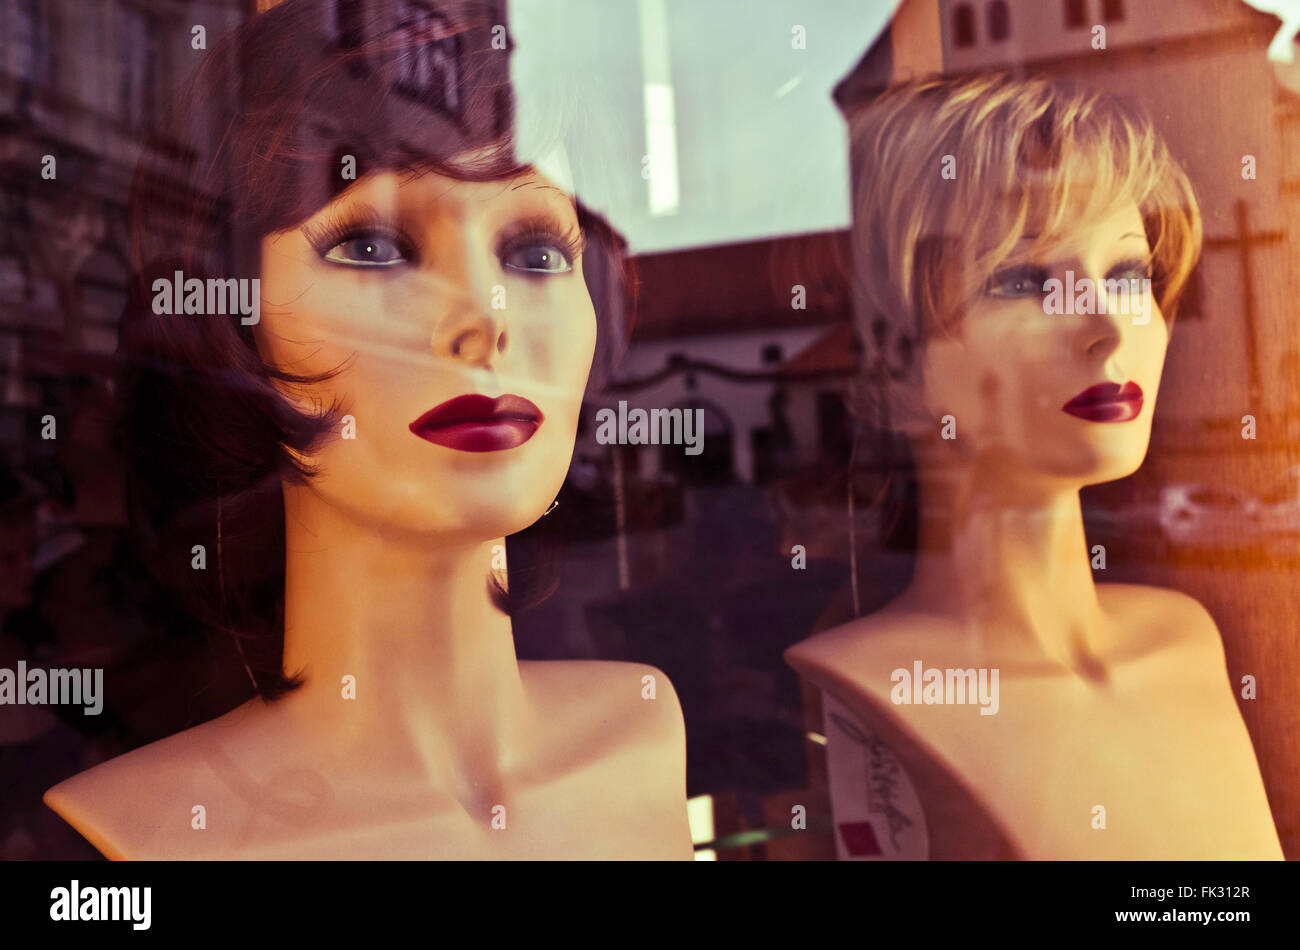 Maniquíes cabezas en una vitrina de una tienda Foto de stock